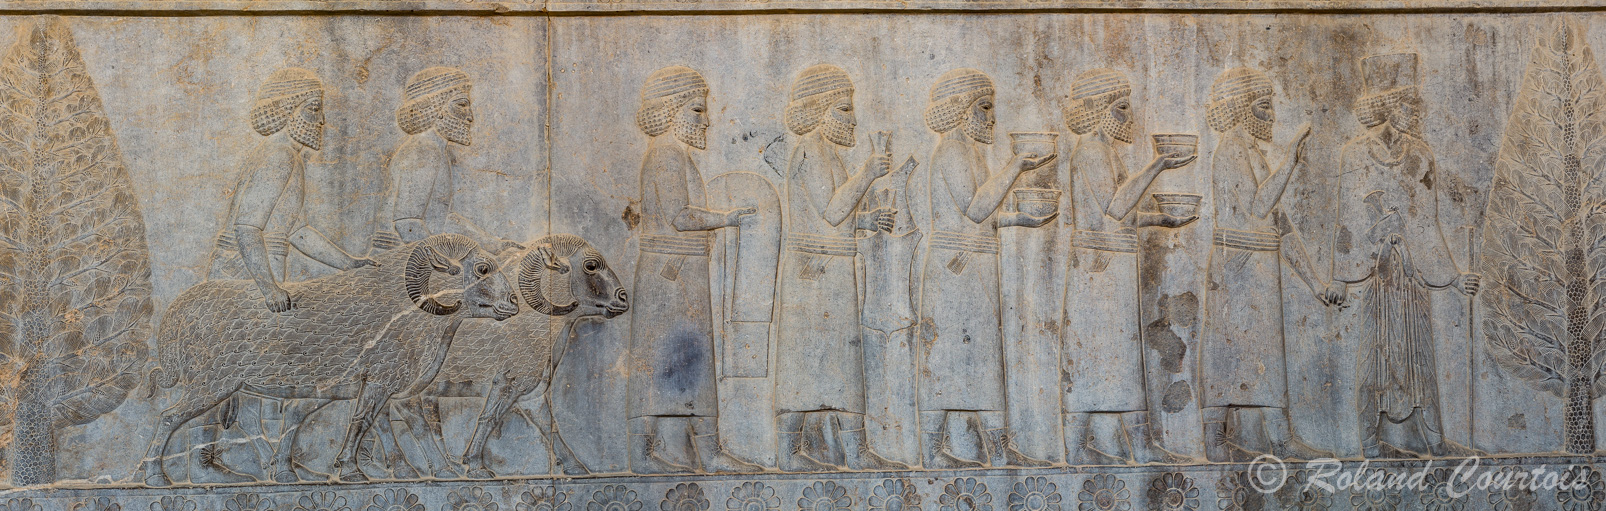 Persepolis :  Frise des Tributaires, Les Assyriens (voir les lacets), avec les béliers, apportent de la vaisselle.